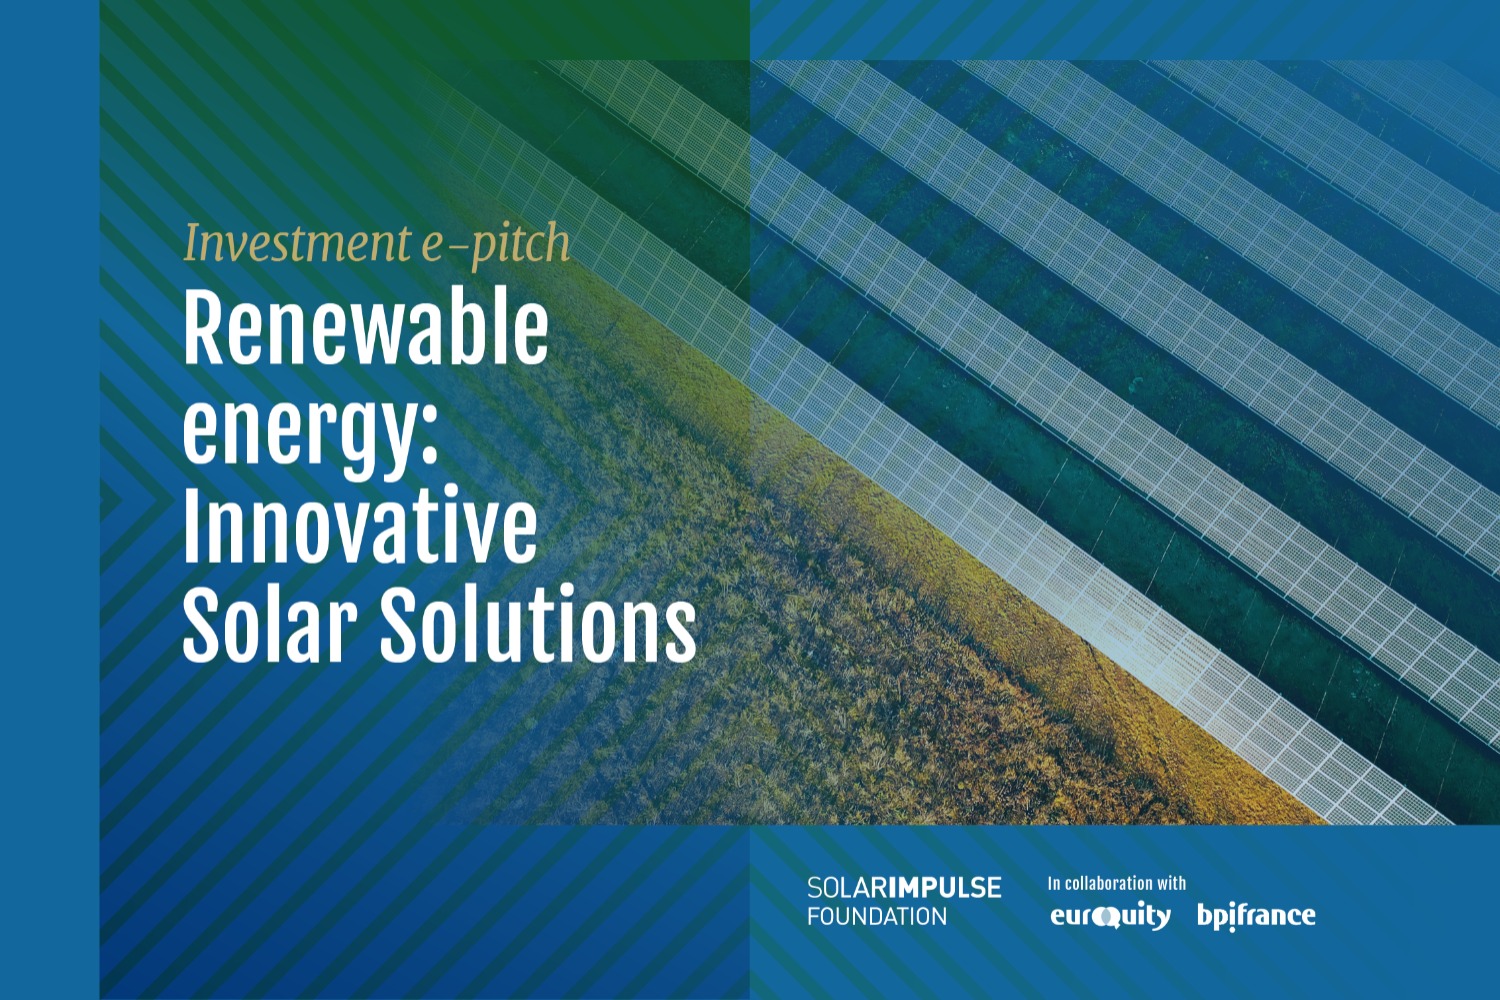 E-Pitch Solar Impulse Investment - "Renewable Energy: Innovative Solar Solutions" (Energia Renovável: Soluções Solares Inovadoras) 